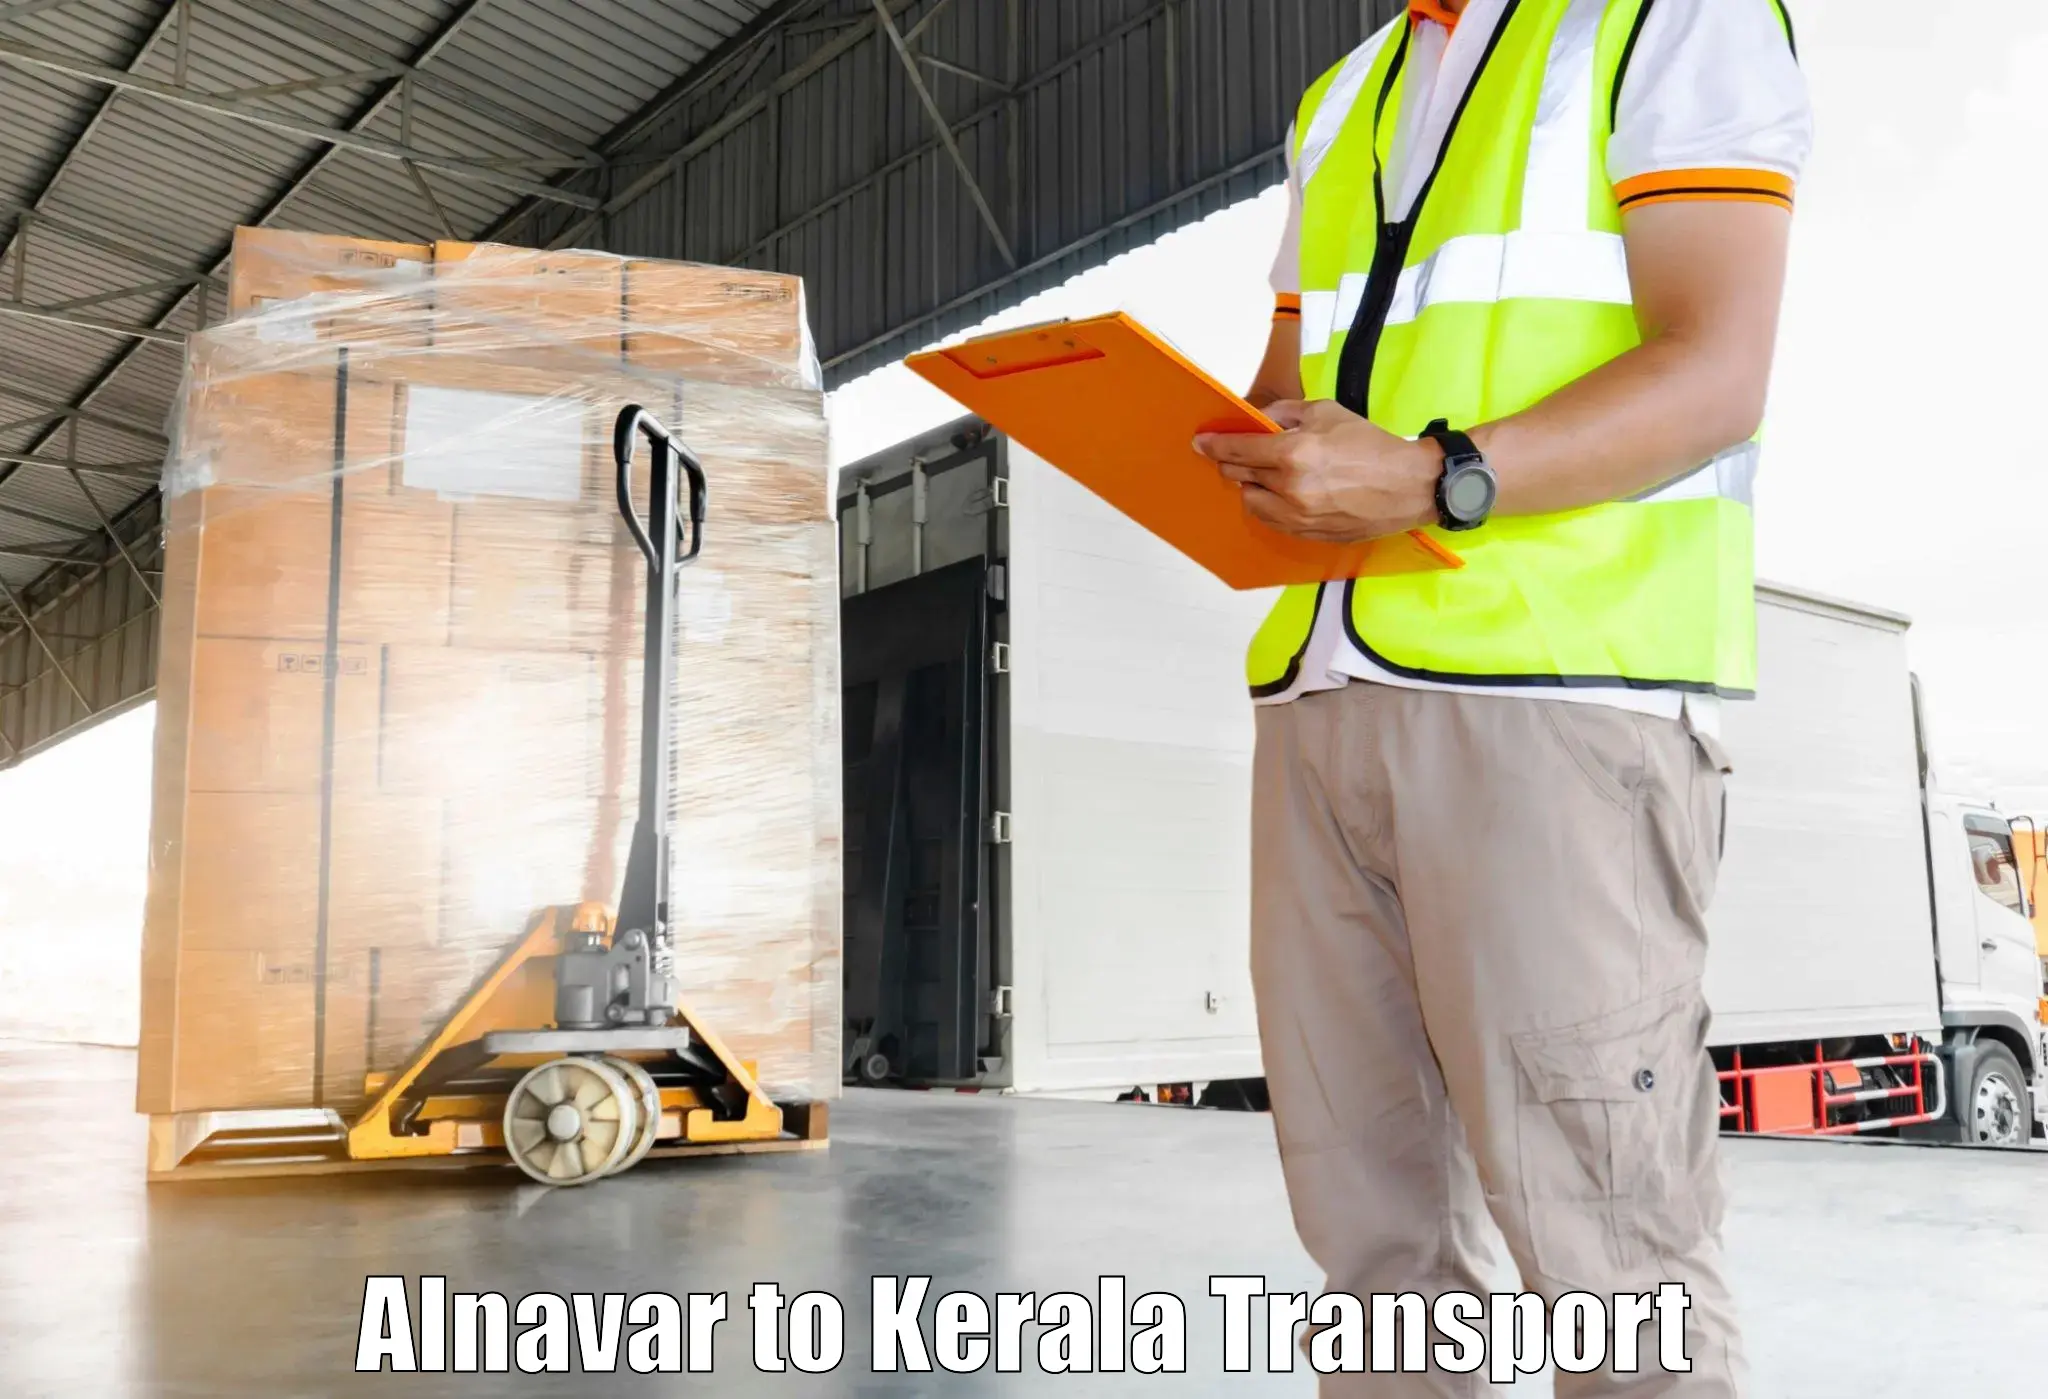 Road transport online services Alnavar to Thiruvananthapuram